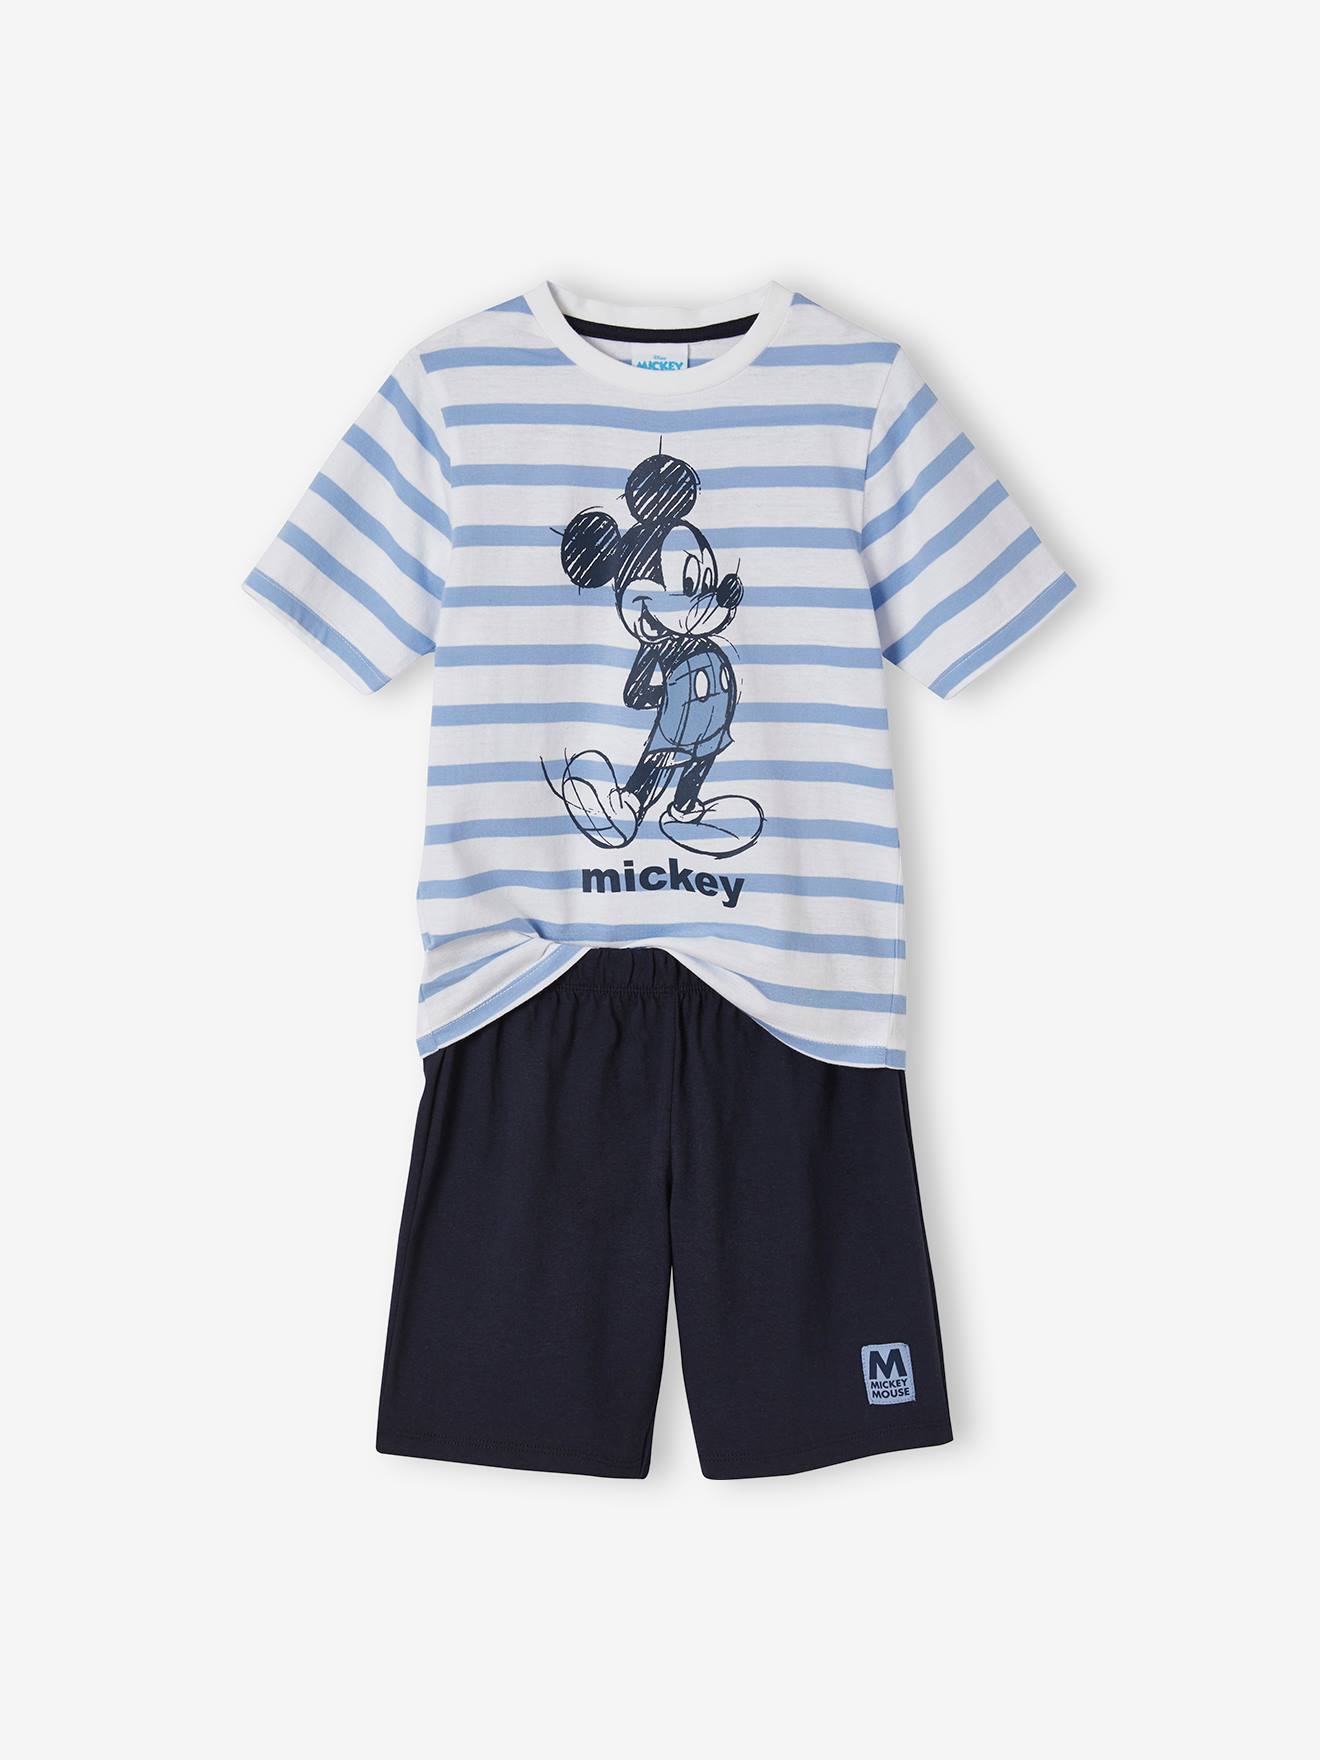 Baby Strampler Disney Mickey Maus Junge Overall Top Schlafanzug Einteiler Jung 